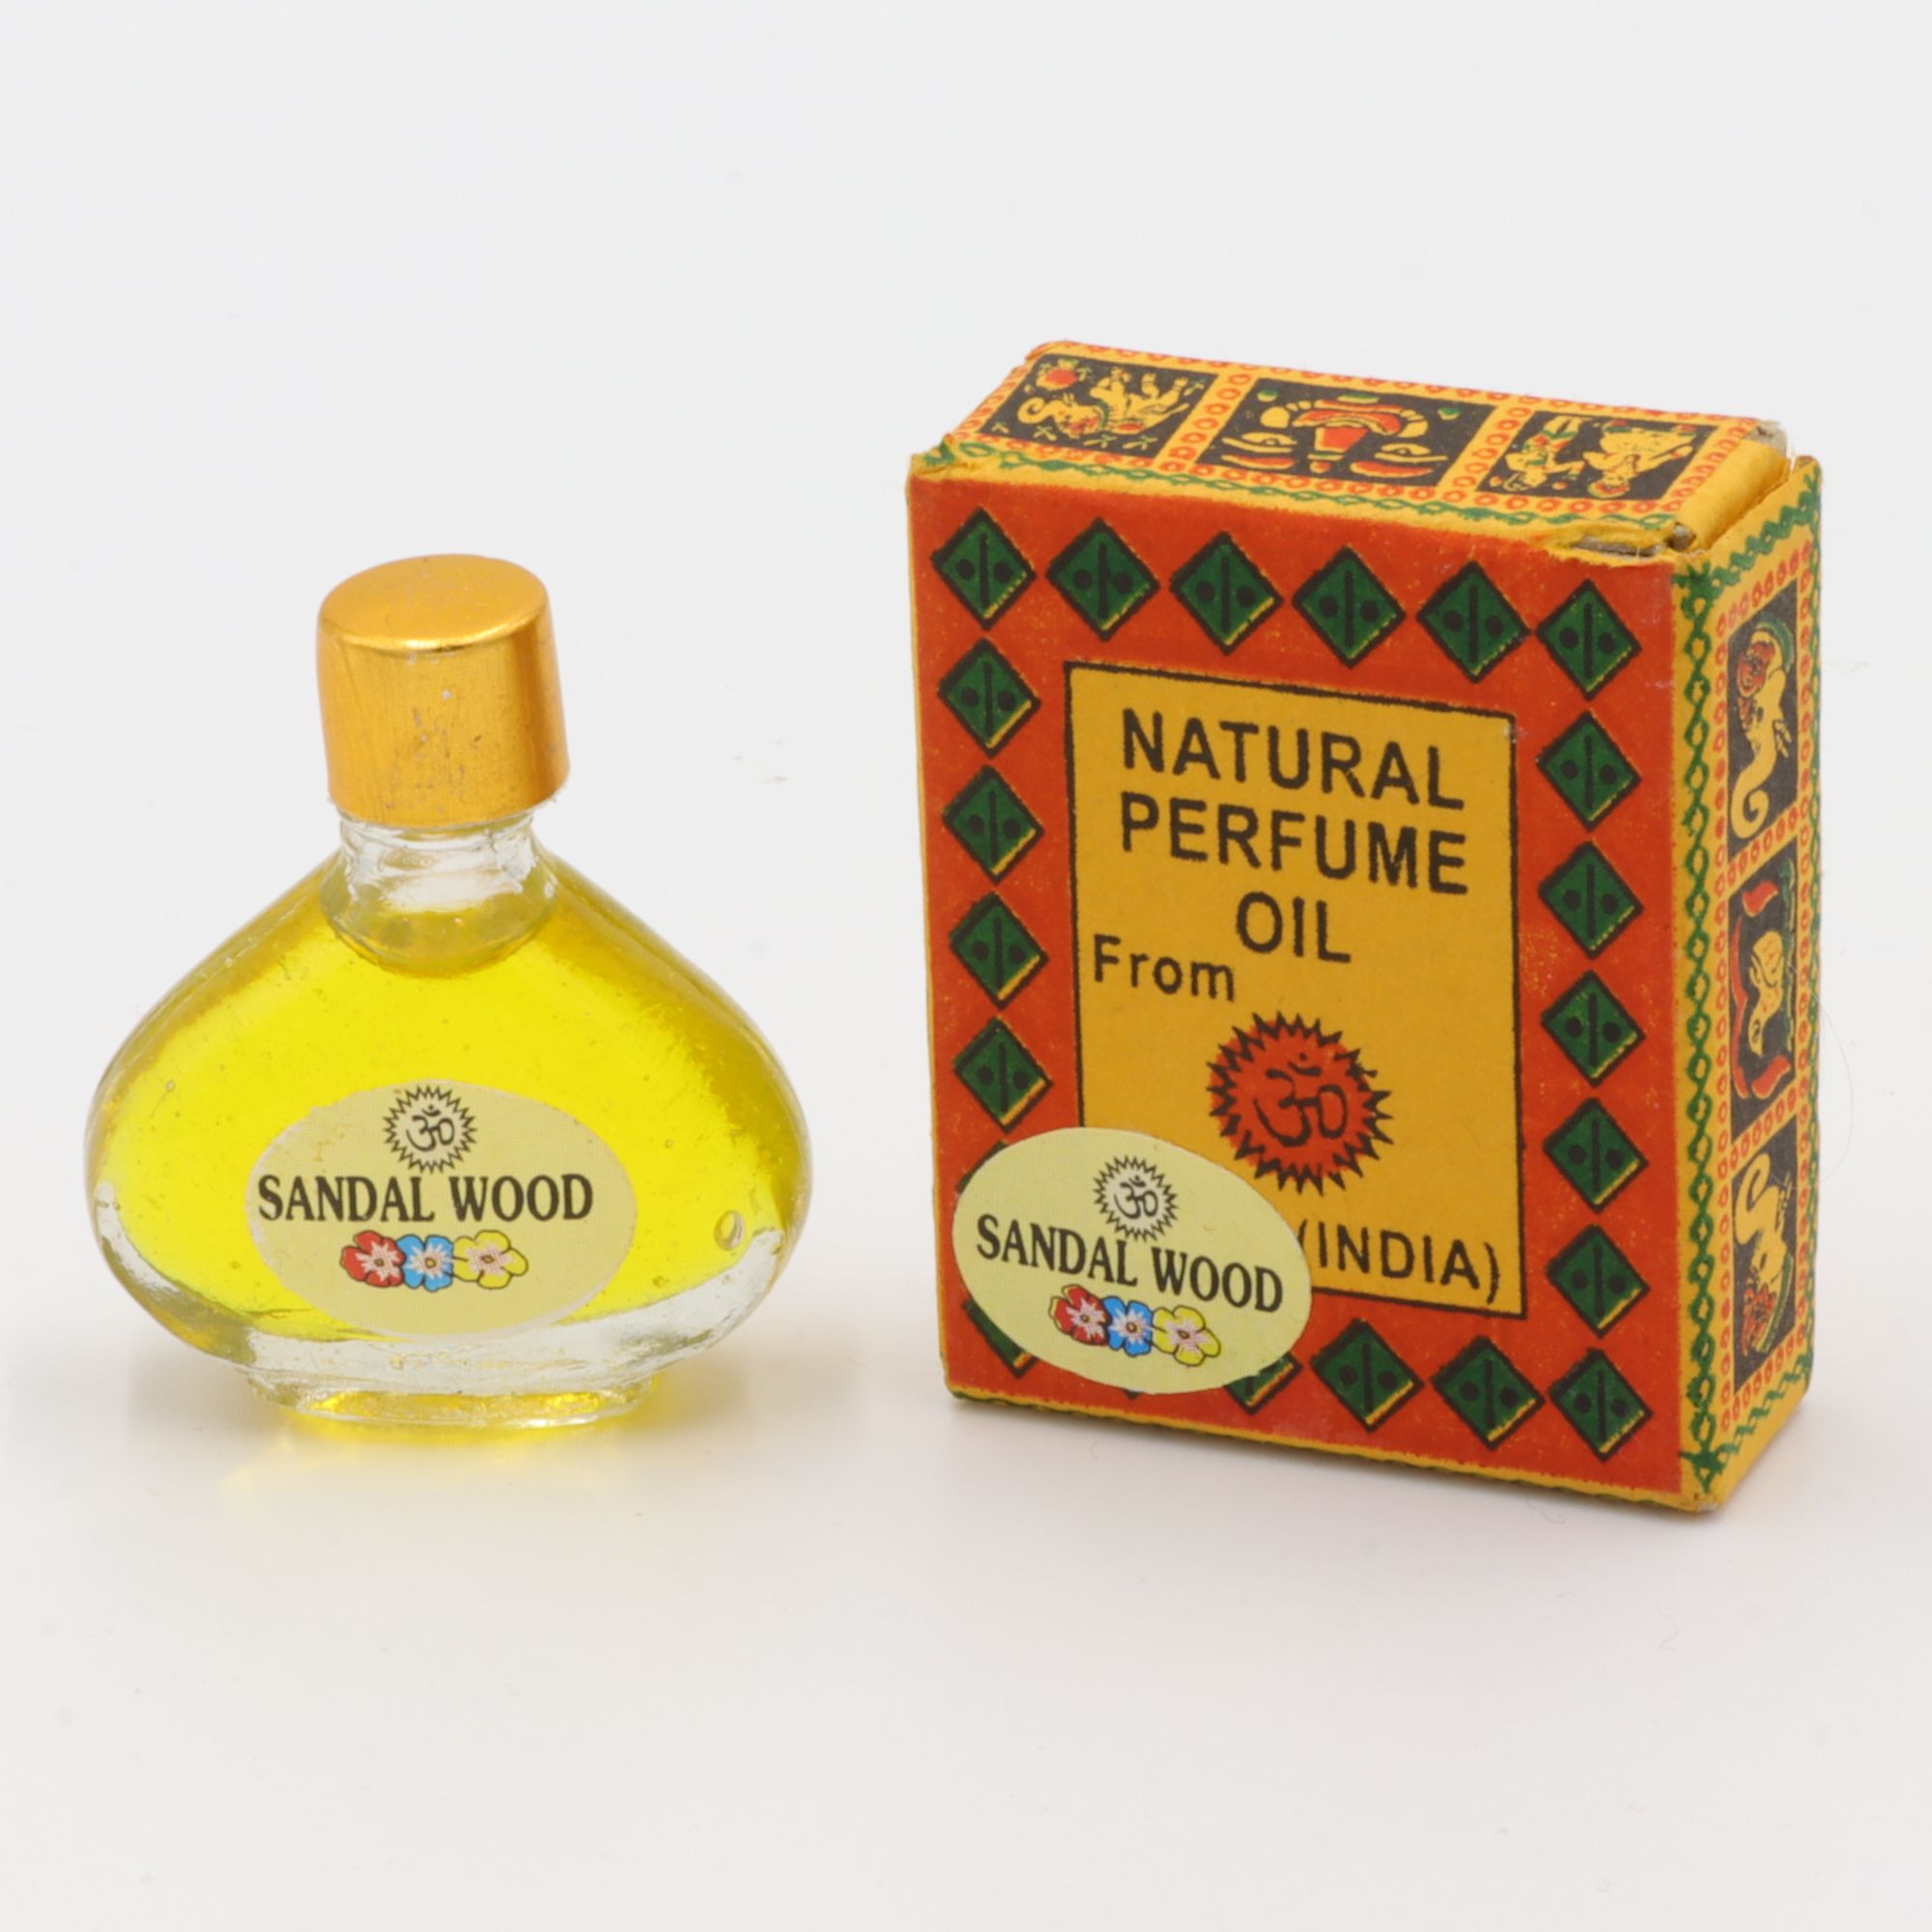 Natürliches Parfüm Öl - Om Expo - Sandal Wood - betörender Duft aus Indien - in süßem Flakon aus Glas